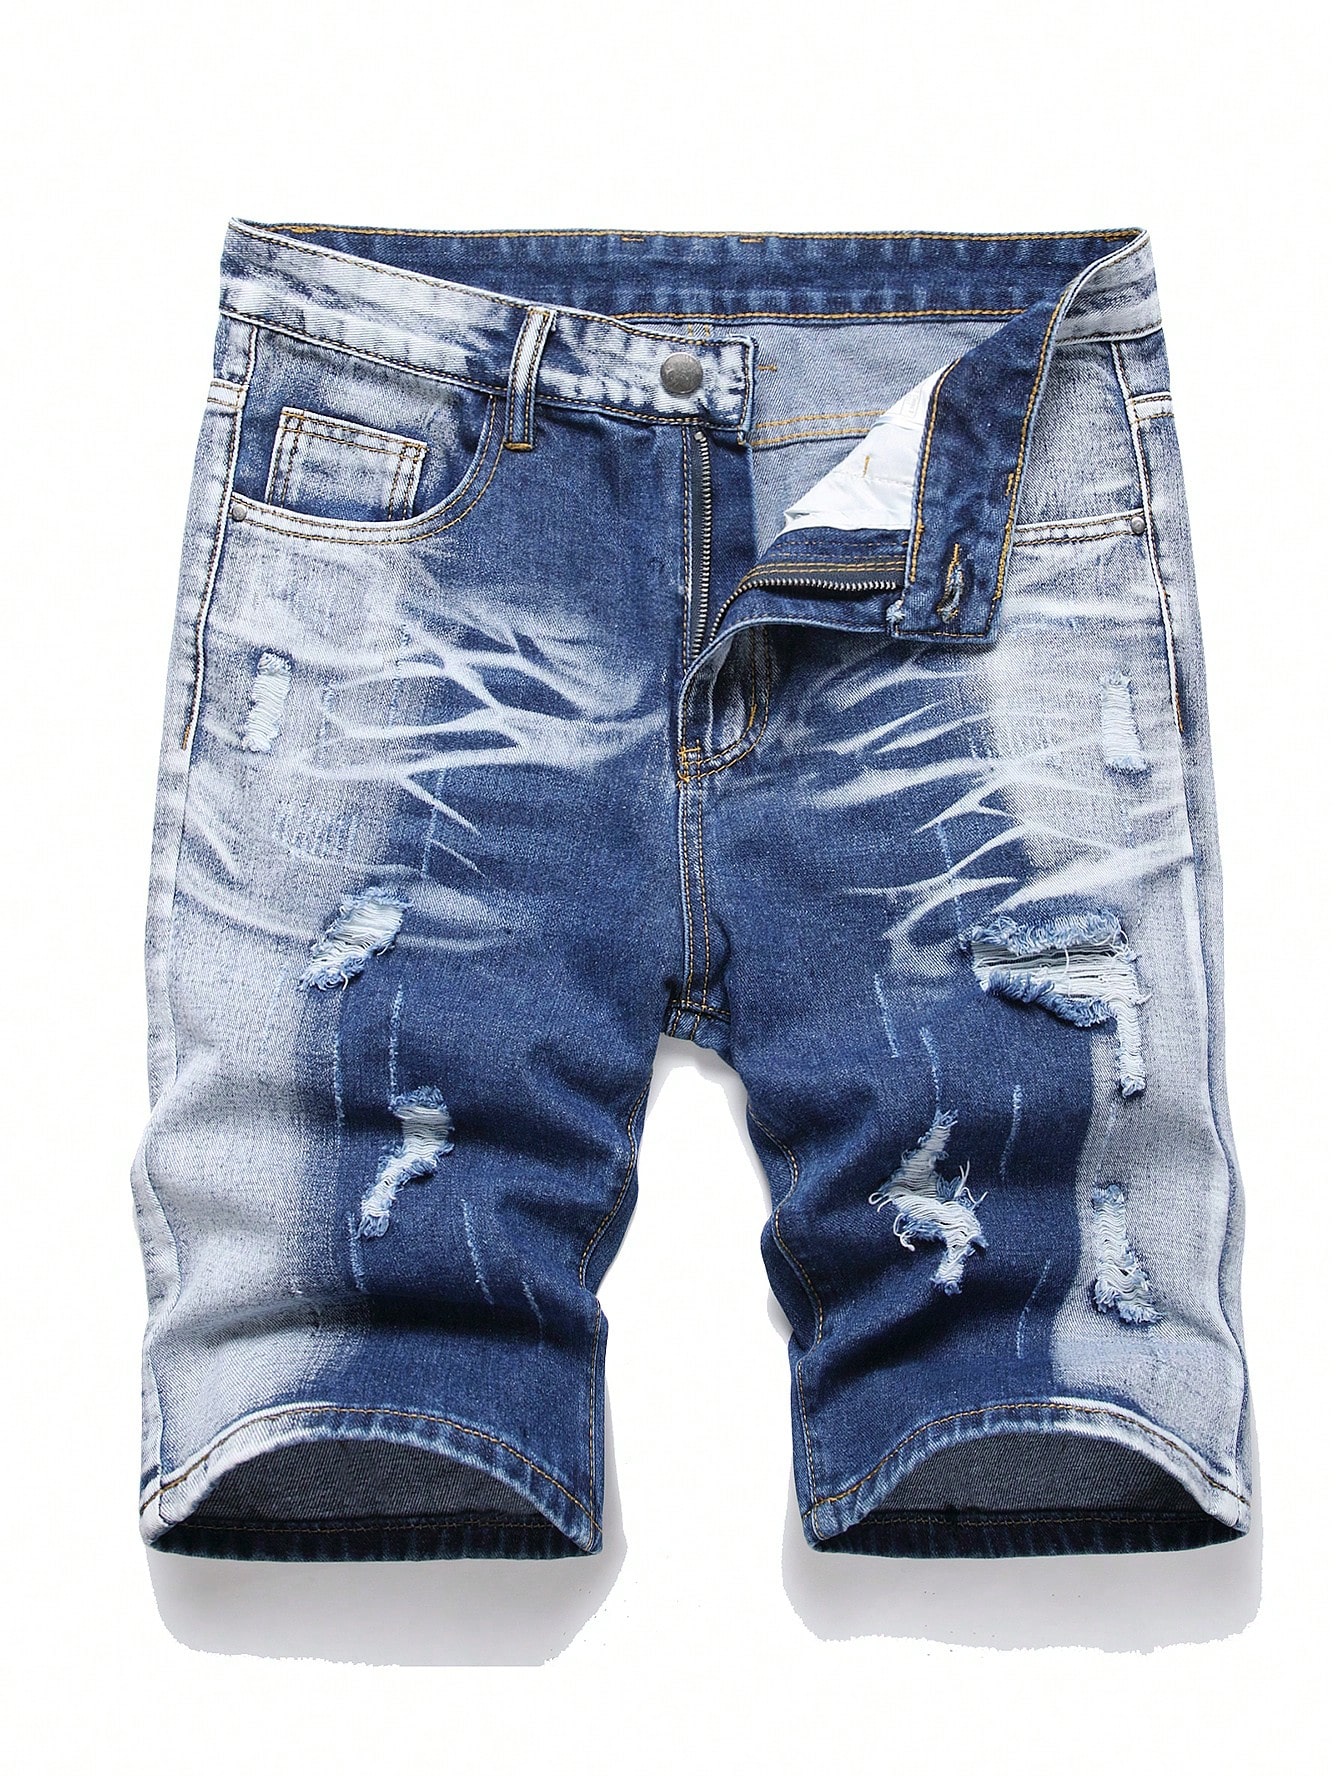 Мужские джинсовые шорты с потертостями в европейском и американском стиле, синий и белый фото